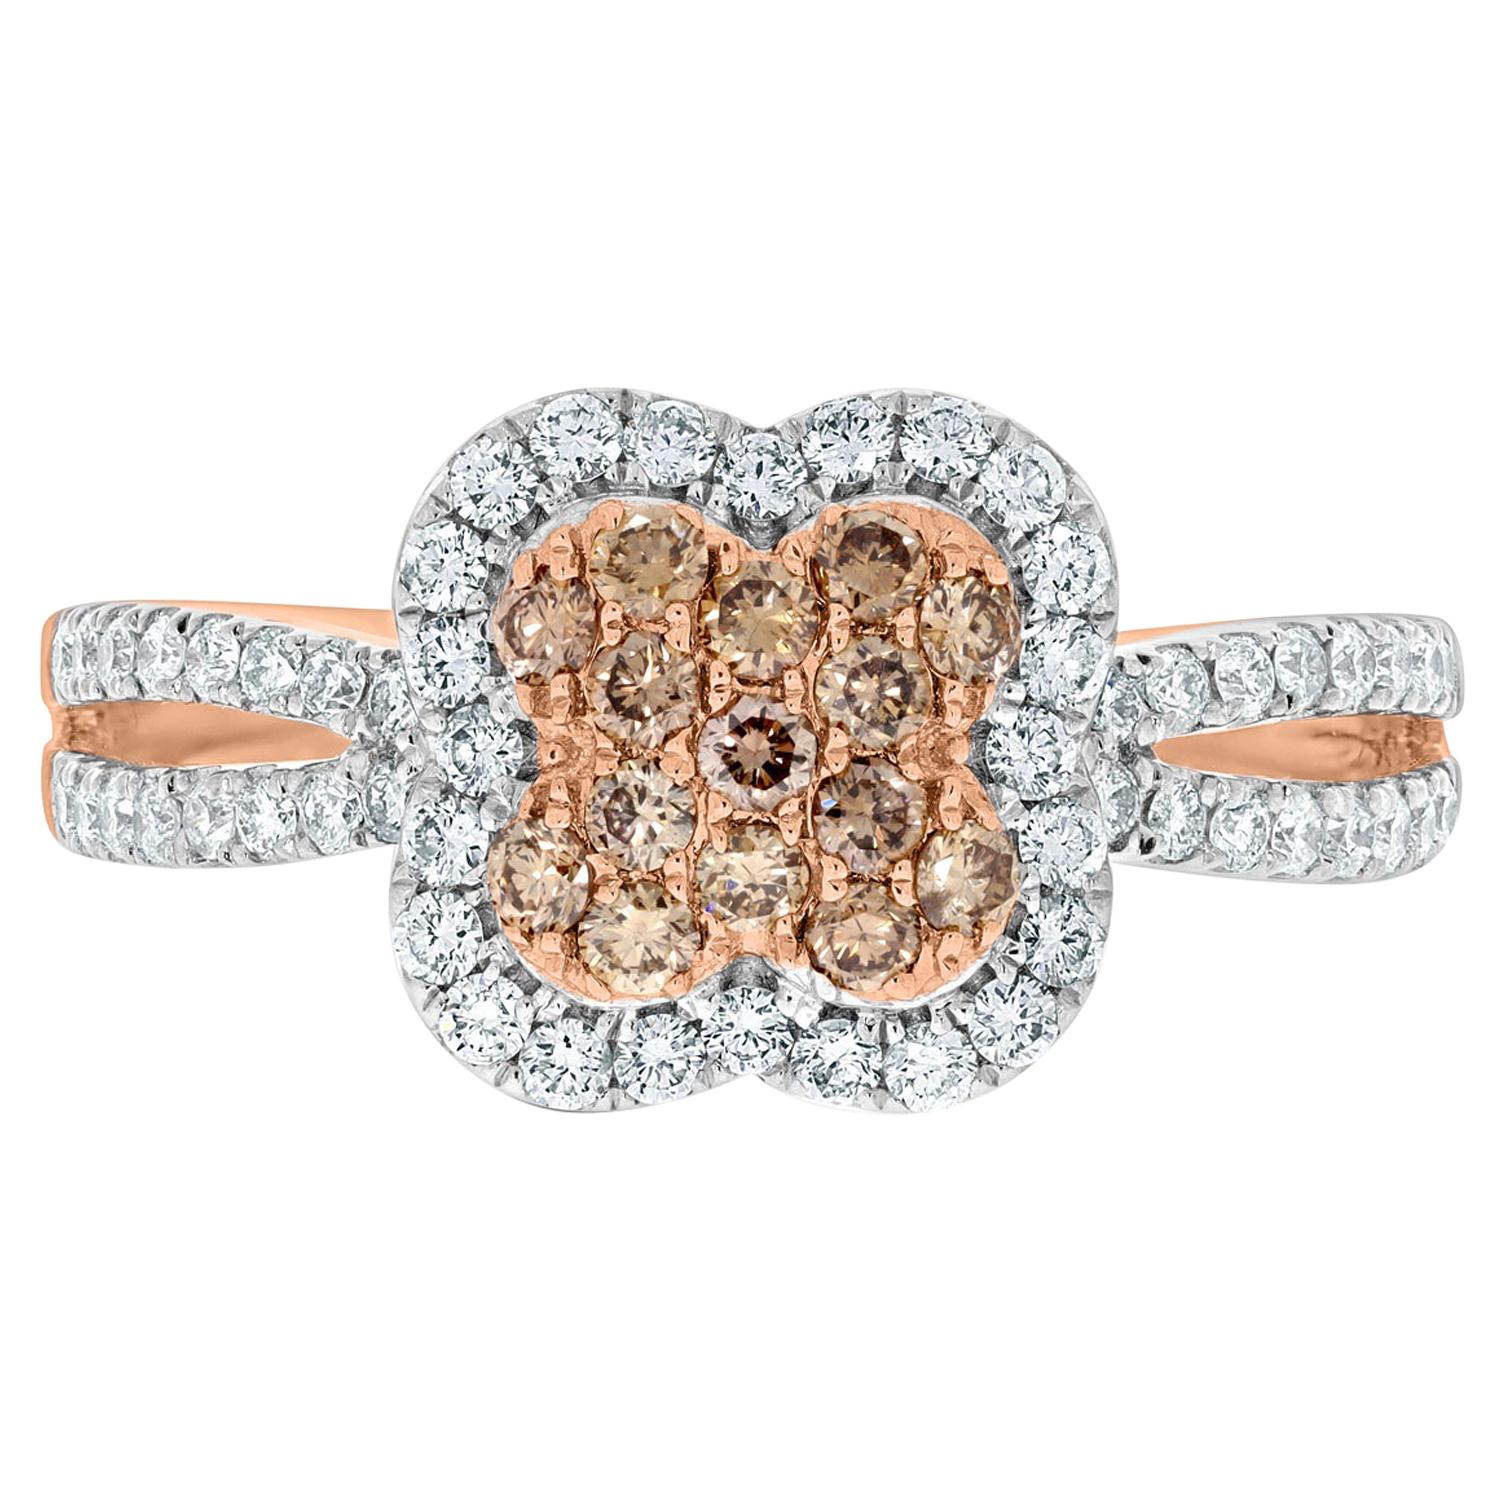 Gem Bleu 0.28 Carat Pink Diamonds Ring with 0.43 Carat Diamonds Set in 14K Gold